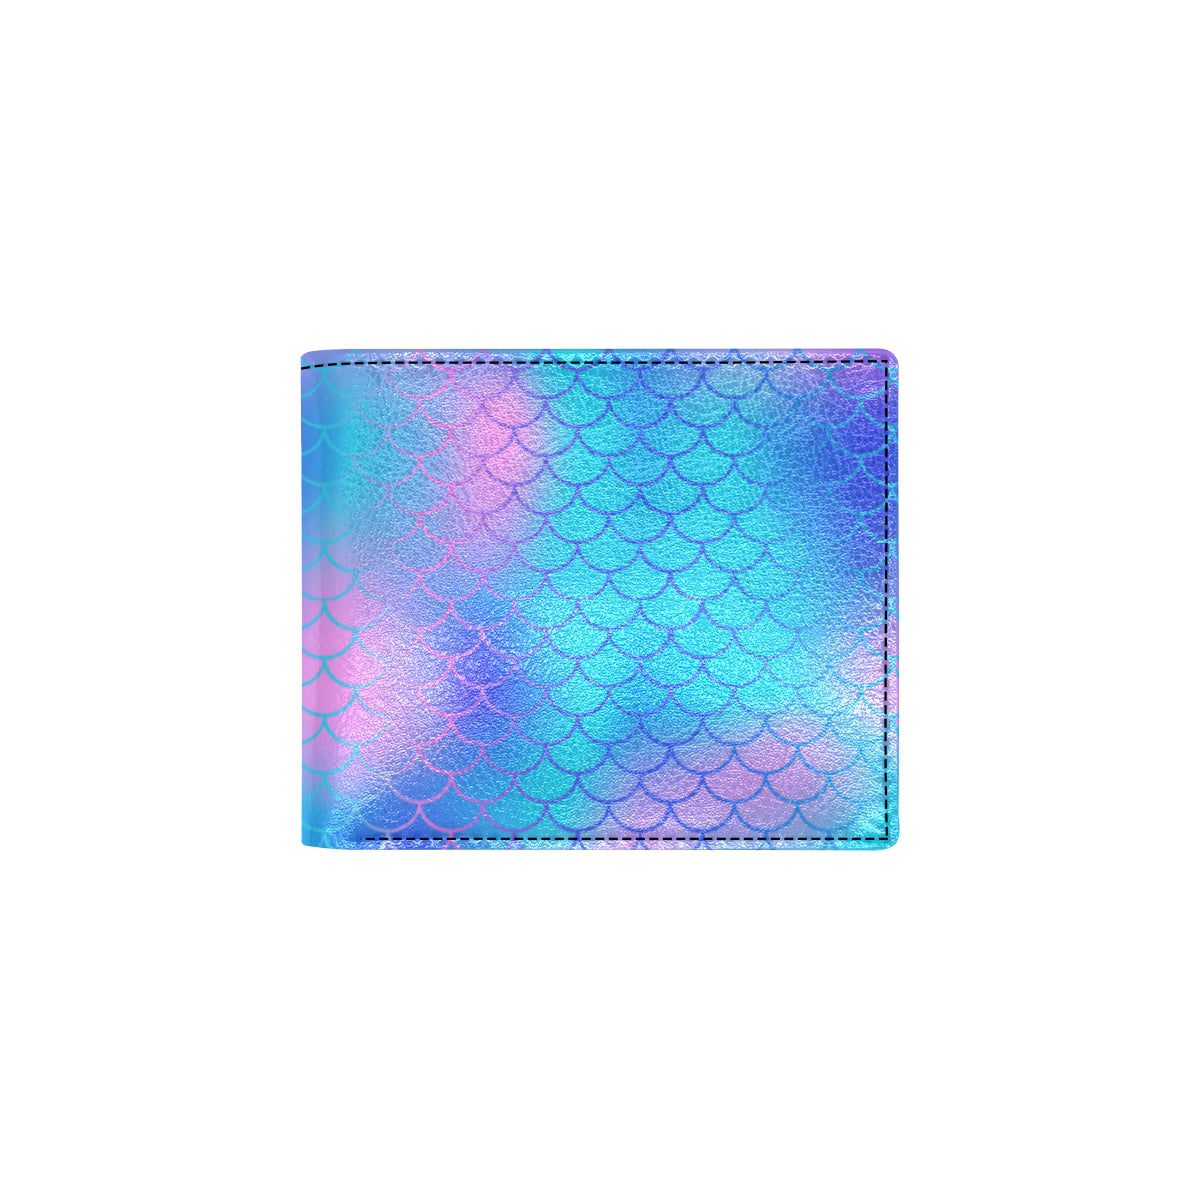 Mermaid Scales Pattern Print Design 04 Men's ID Card Wallet